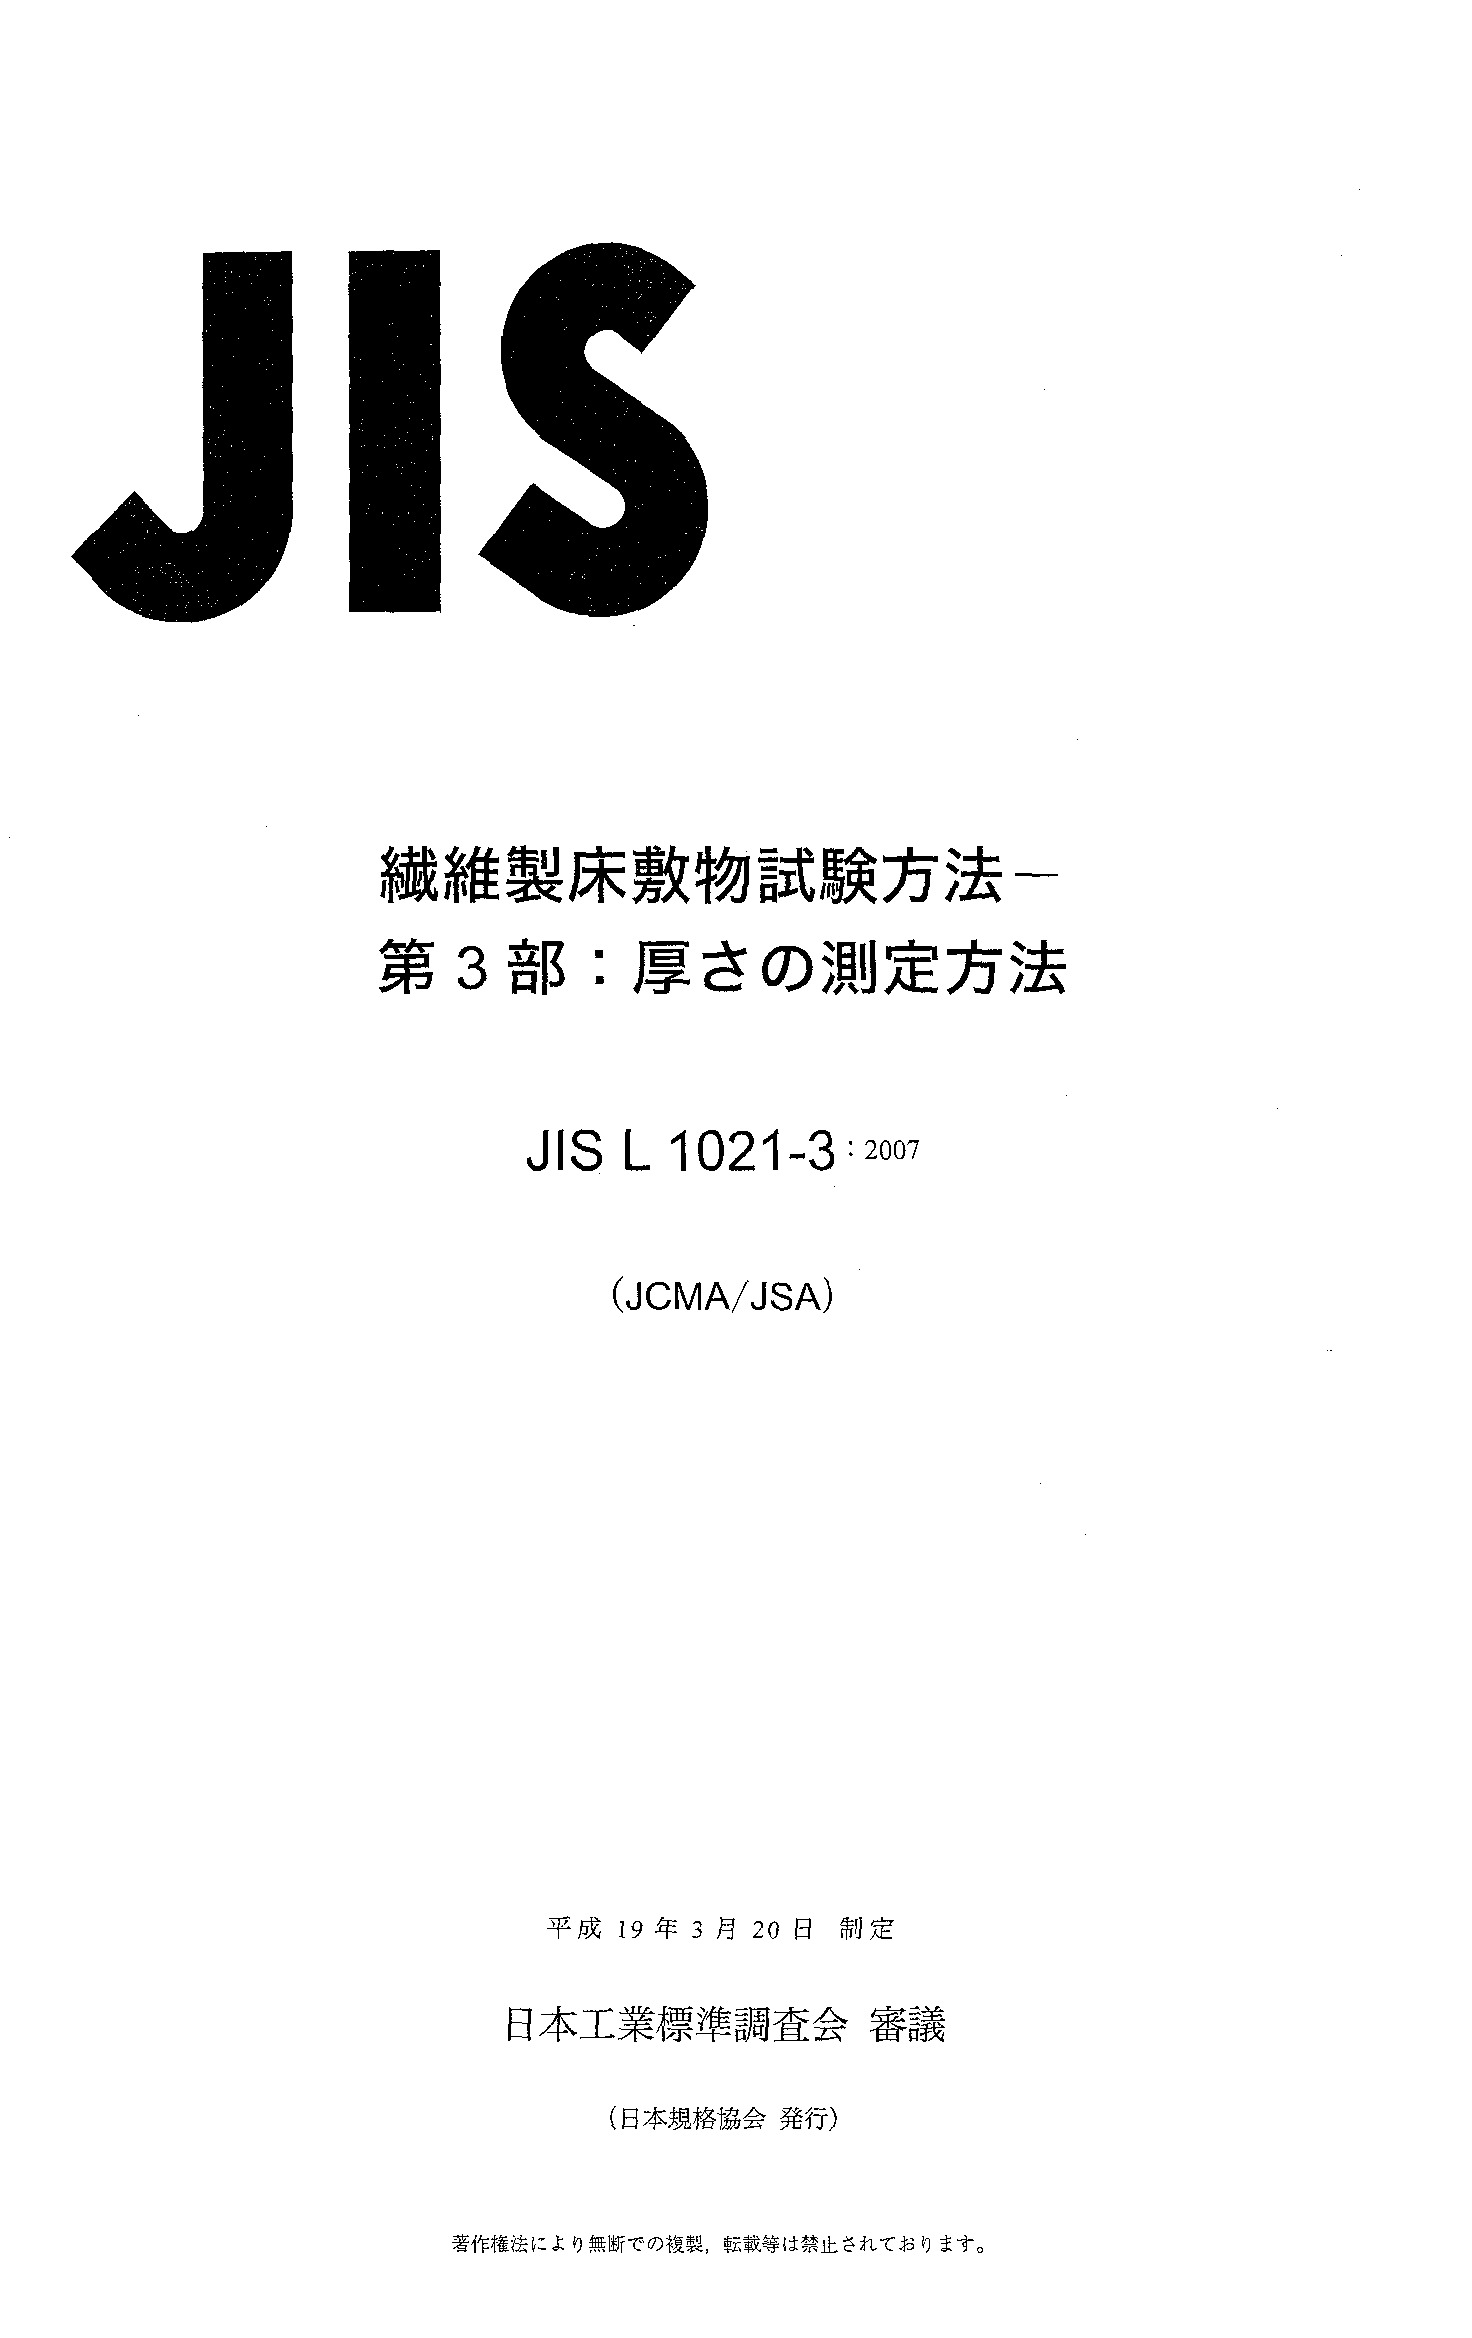 JIS L 1021-3:2007封面图